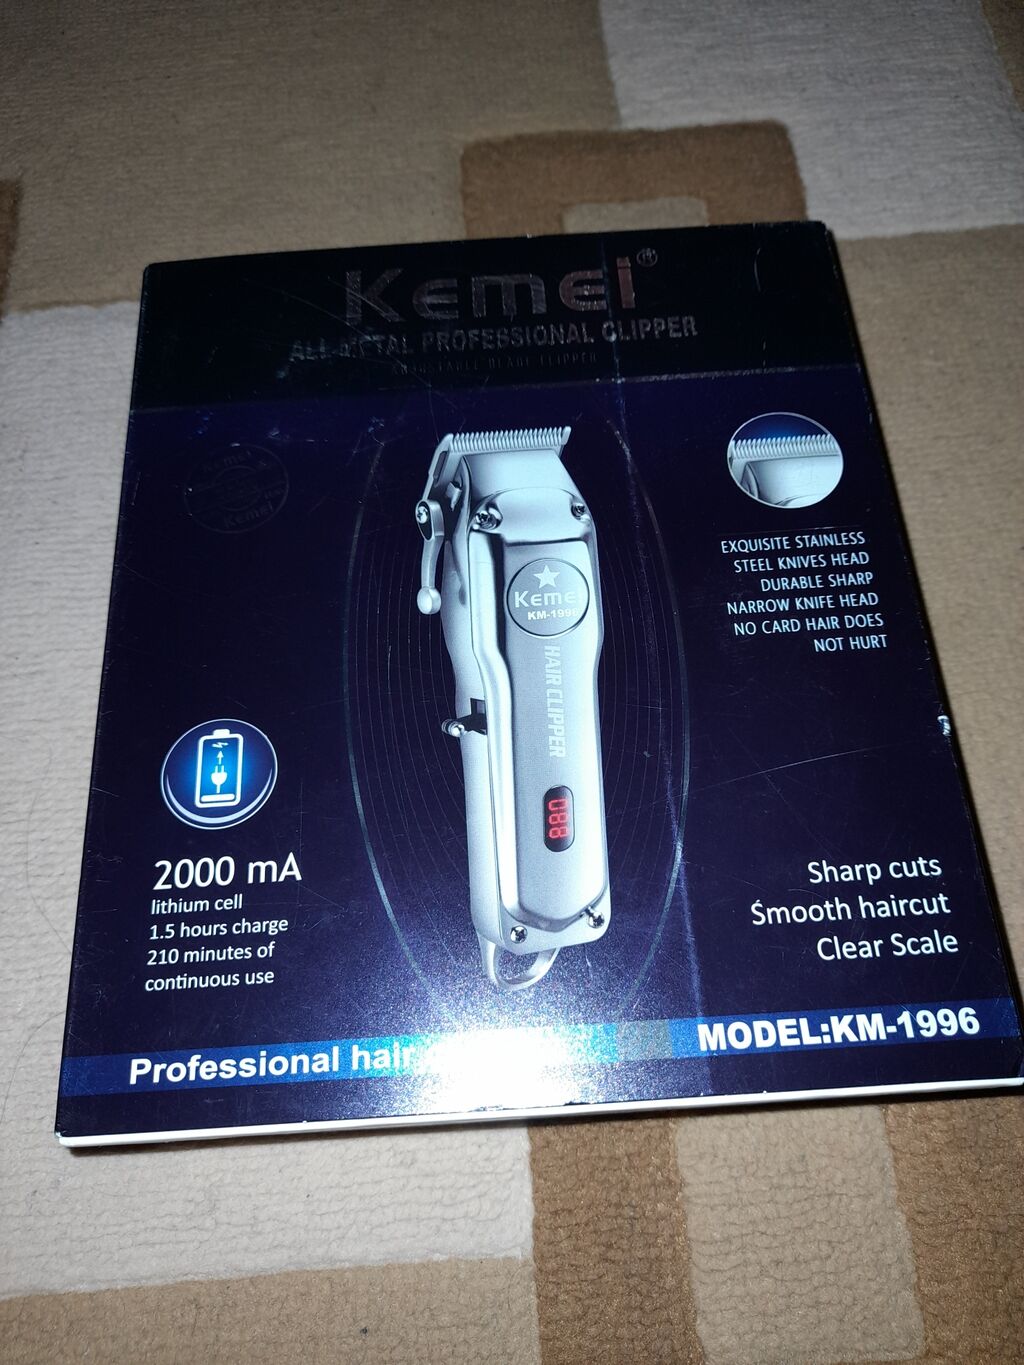 Kemei Επαγγελματική Κουρευτική Μηχανή KM-1996 – 30 EUR | η αγγελία δημοσιεύτηκε 31 Μάρτιος 2022 11:00:59: Kemei Επαγγελματική Κουρευτική Μηχανή KM-1996 – Κατασκευασμένη